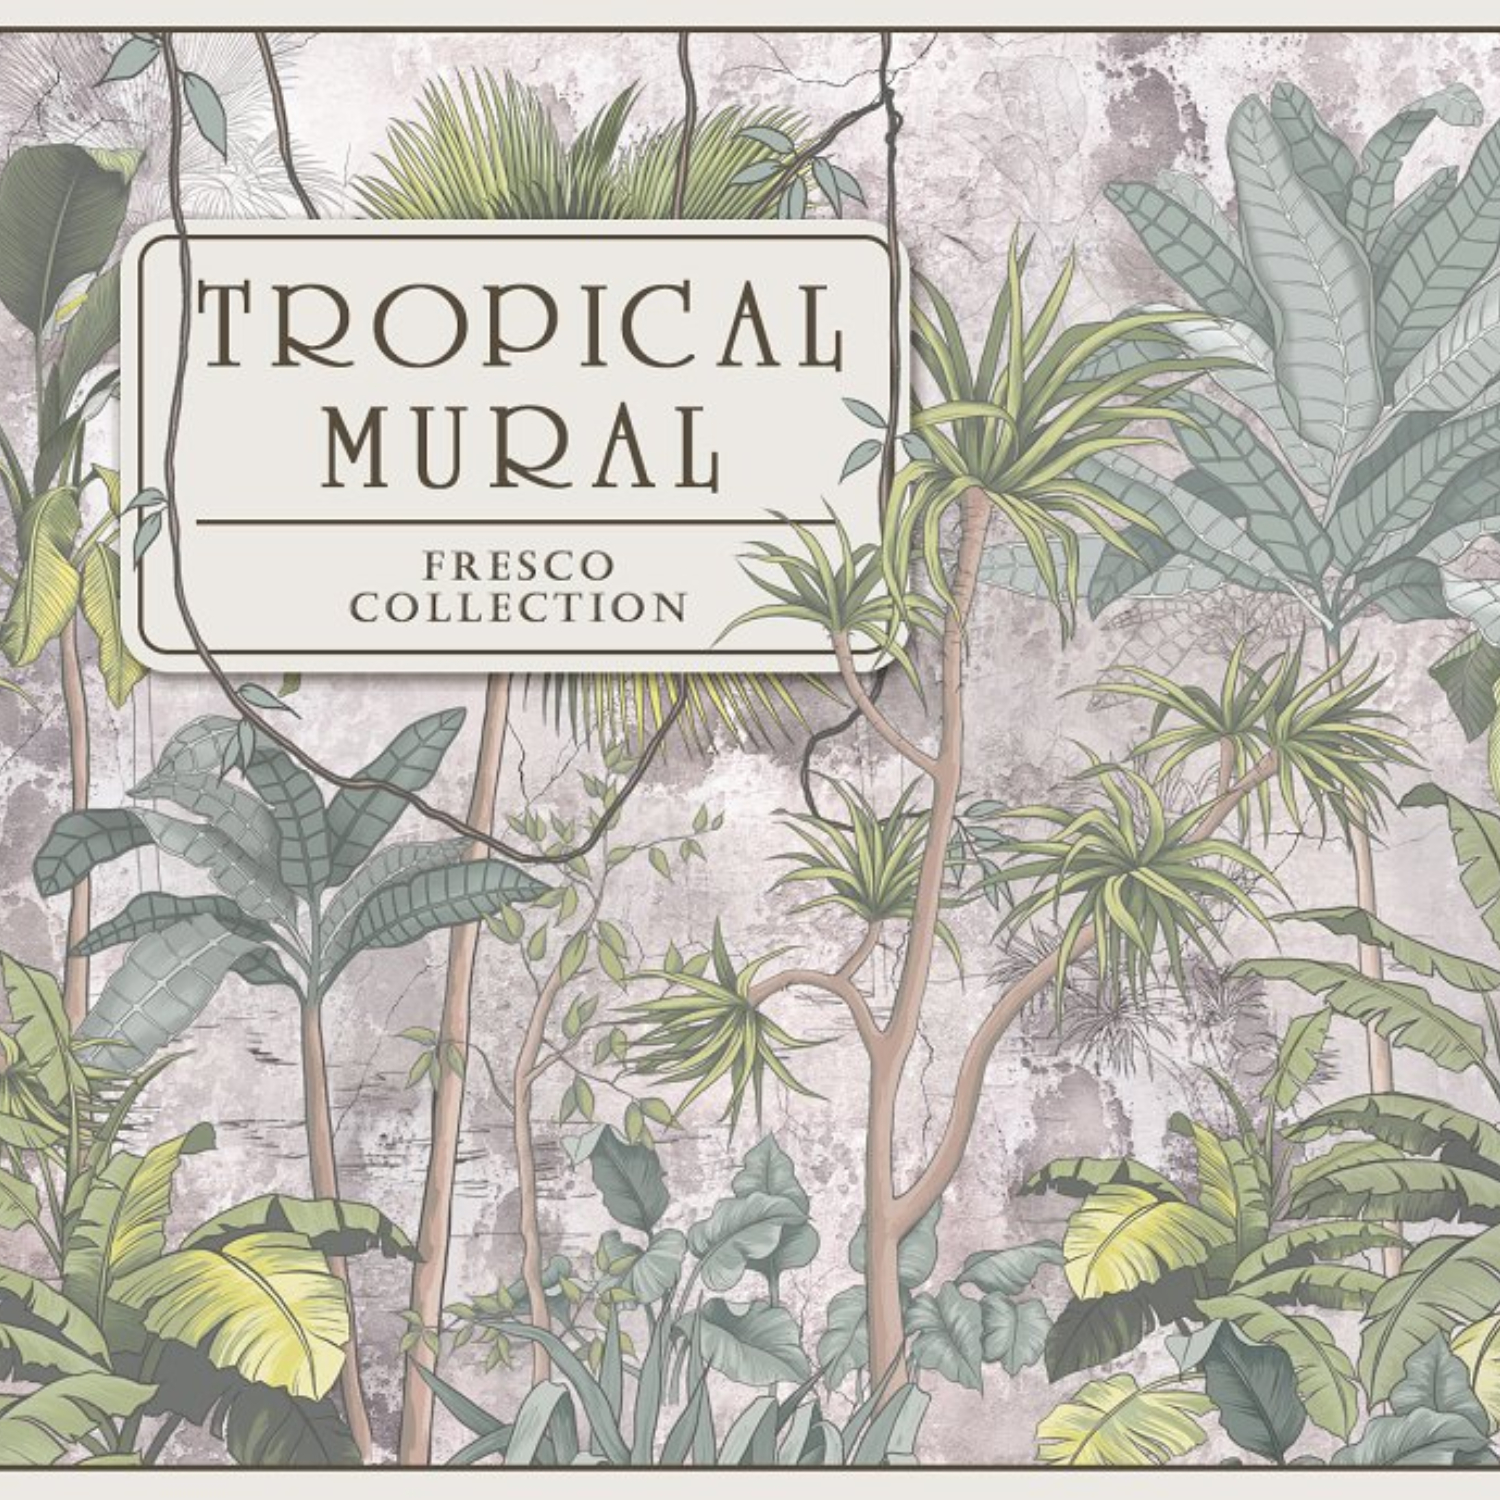 Fresco Collection "Tropical Mural".